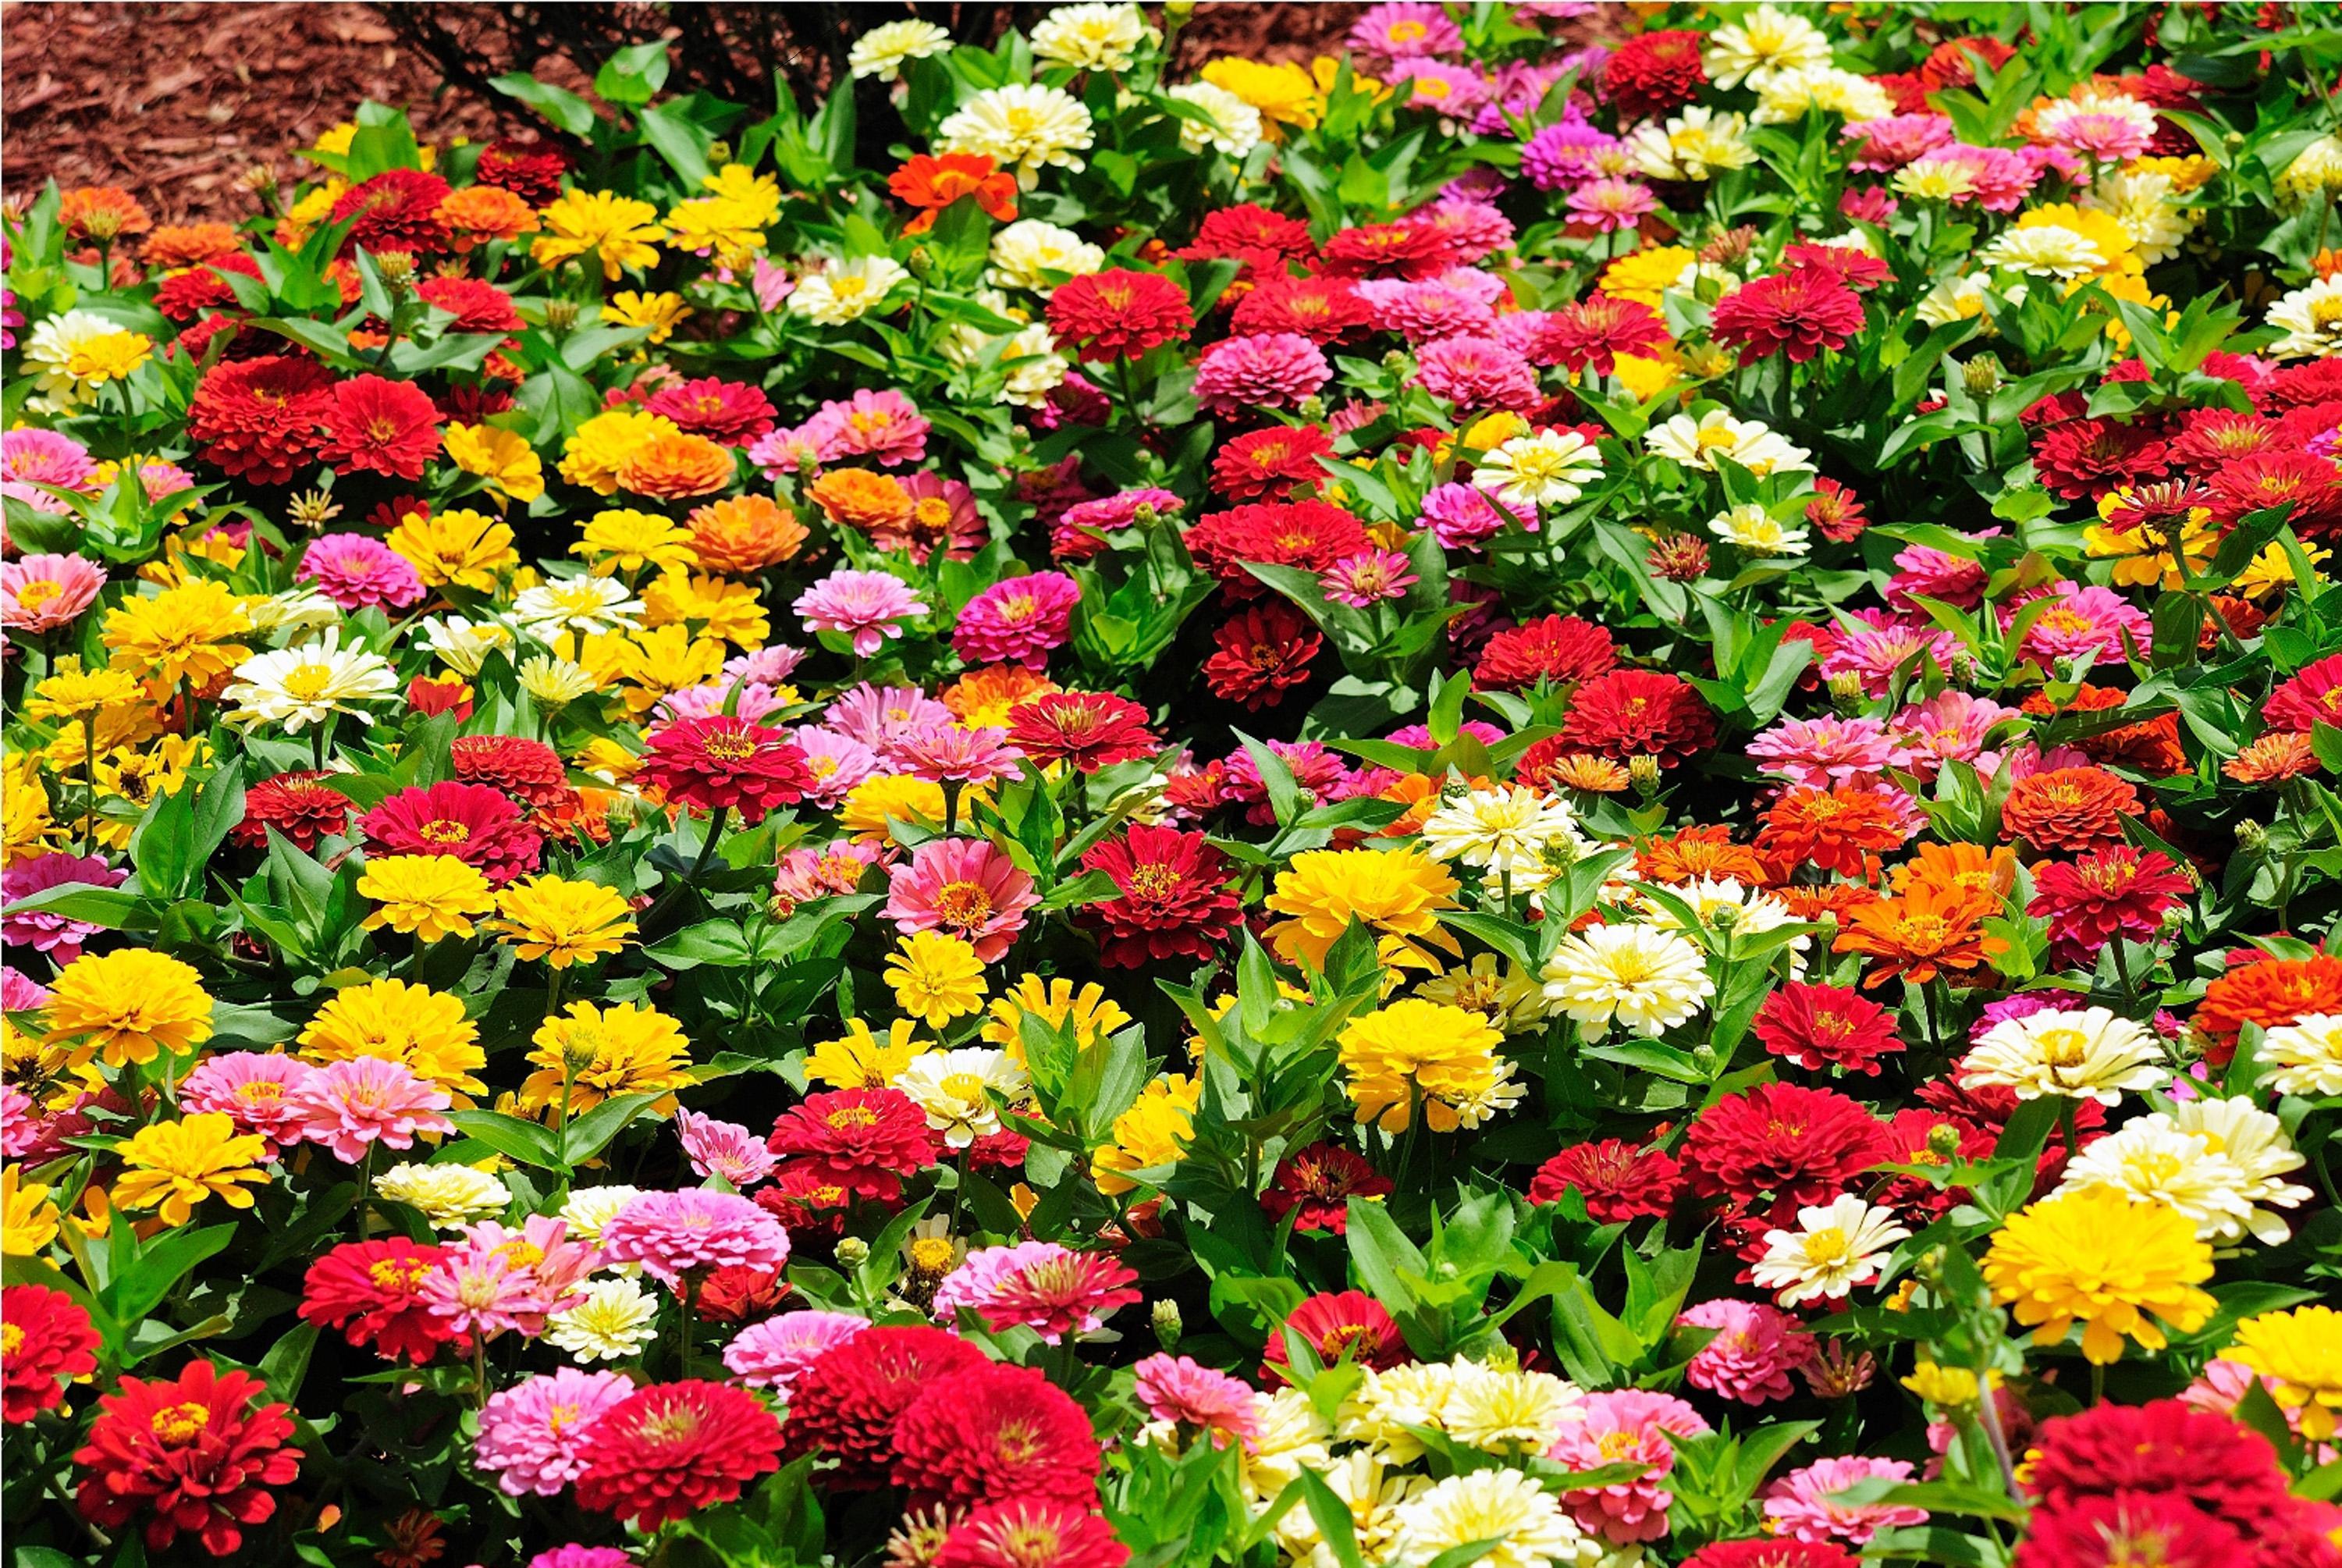 Скачать обои бесплатно Цветок, Цвета, Красочный, Сад, Весна, Сделано Человеком картинка на рабочий стол ПК